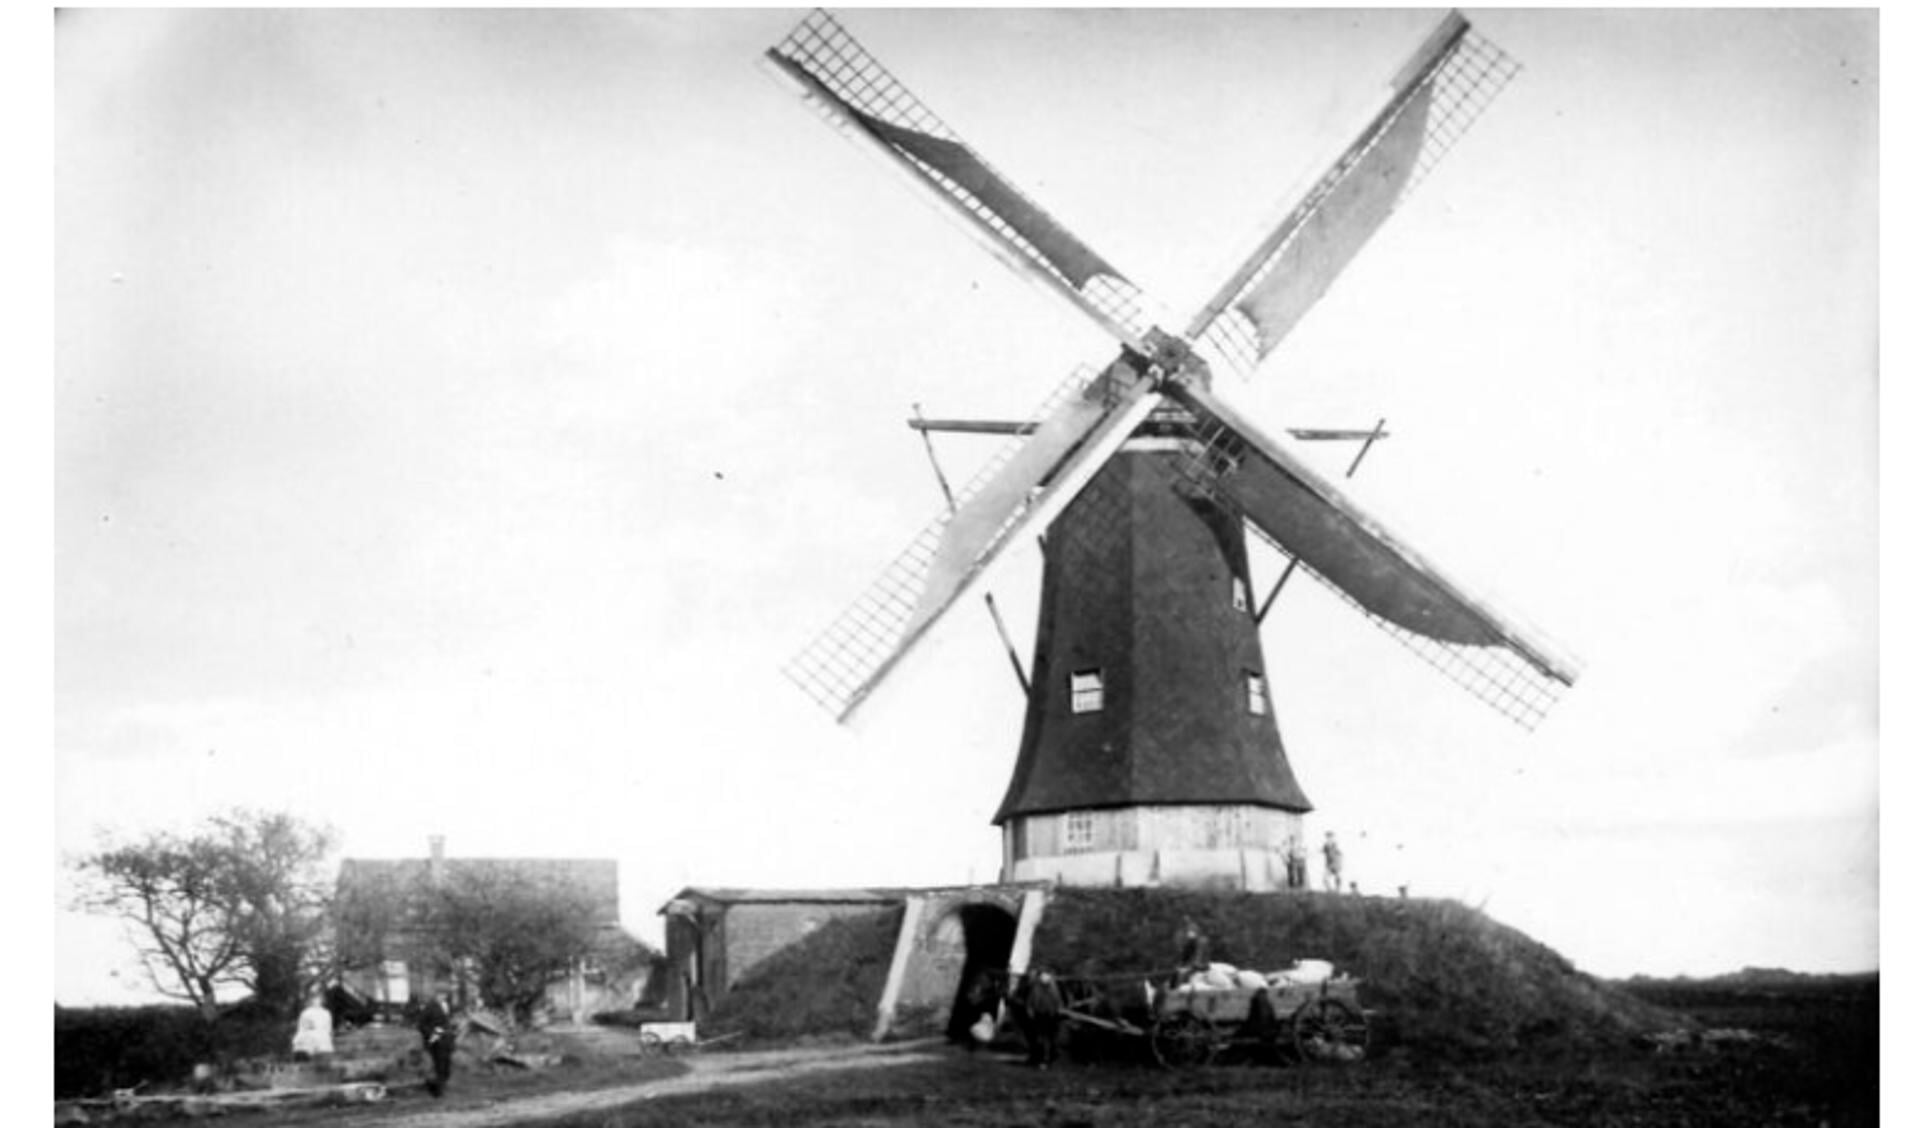 Zoekplaatje, molen in buitengebied Aalten. Foto: collectie Leo van der Linde